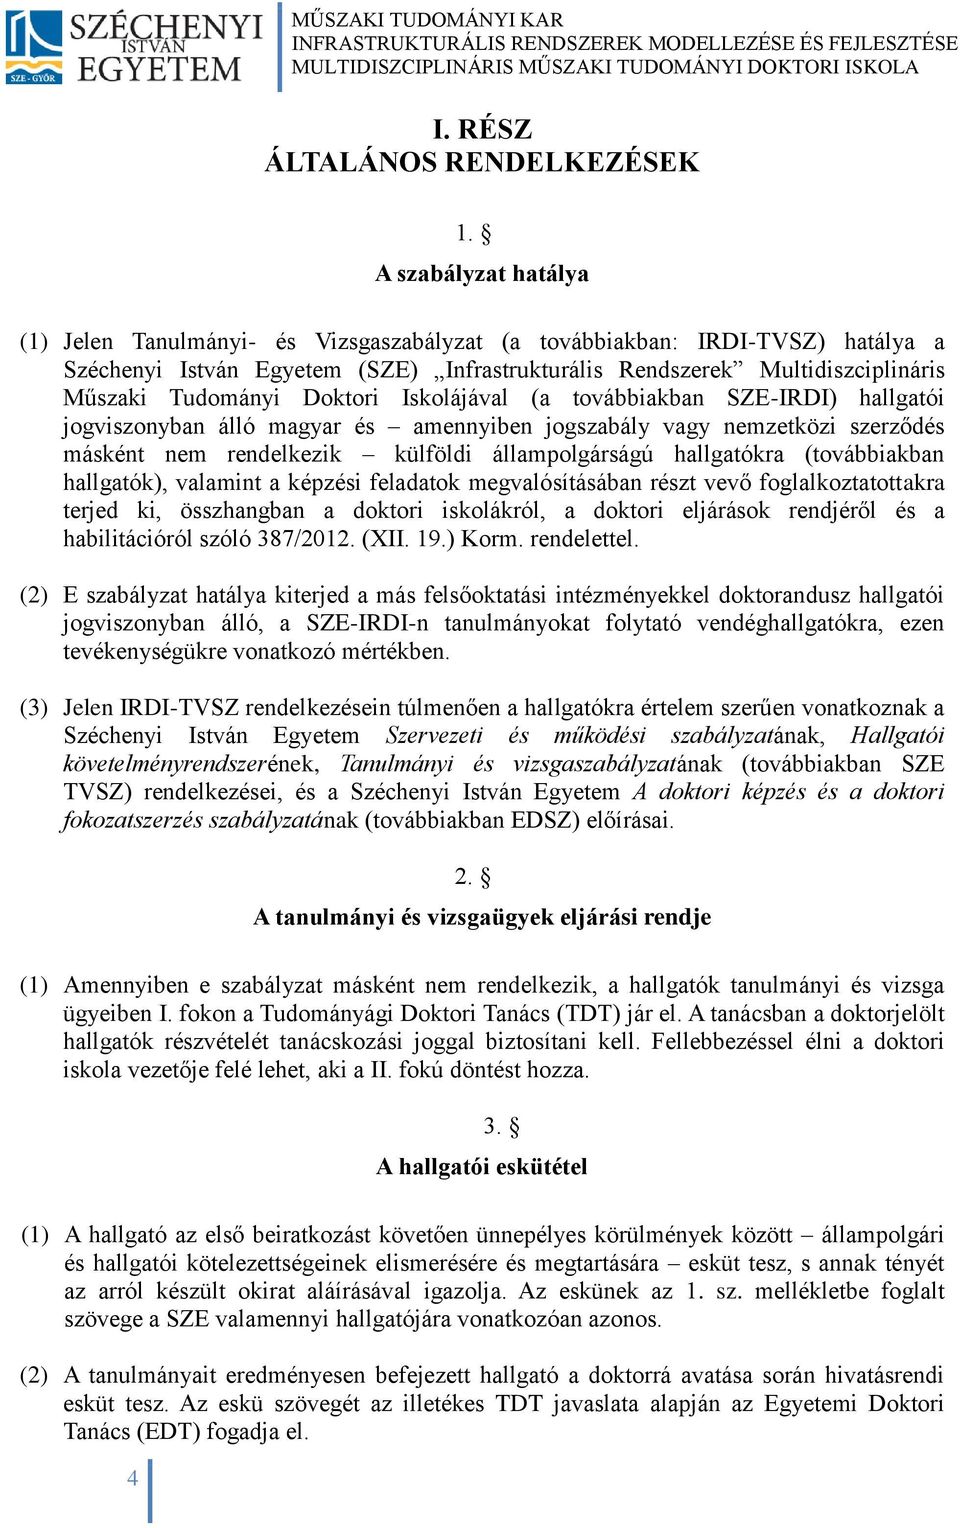 Doktori Iskolájával (a továbbiakban SZE-IRDI) hallgatói jogviszonyban álló magyar és amennyiben jogszabály vagy nemzetközi szerződés másként nem rendelkezik külföldi állampolgárságú hallgatókra